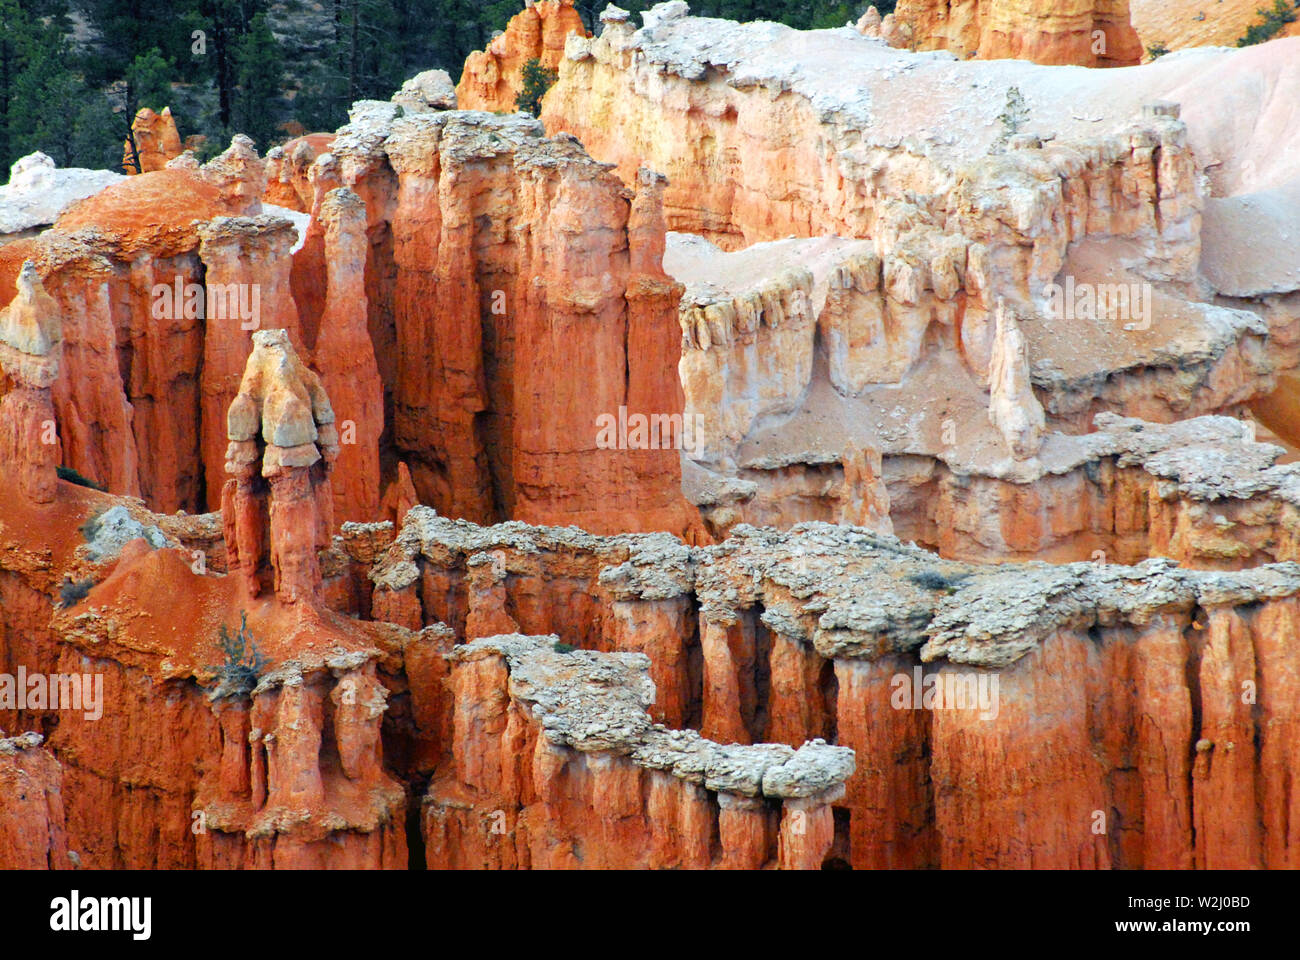 Panorama fo preciosa Bryce Canyon en Utah, EE.UU., el cual es conocido mundialmente por el colorido increíbles formaciones de arenisca llamado Hoodoos. Foto de stock